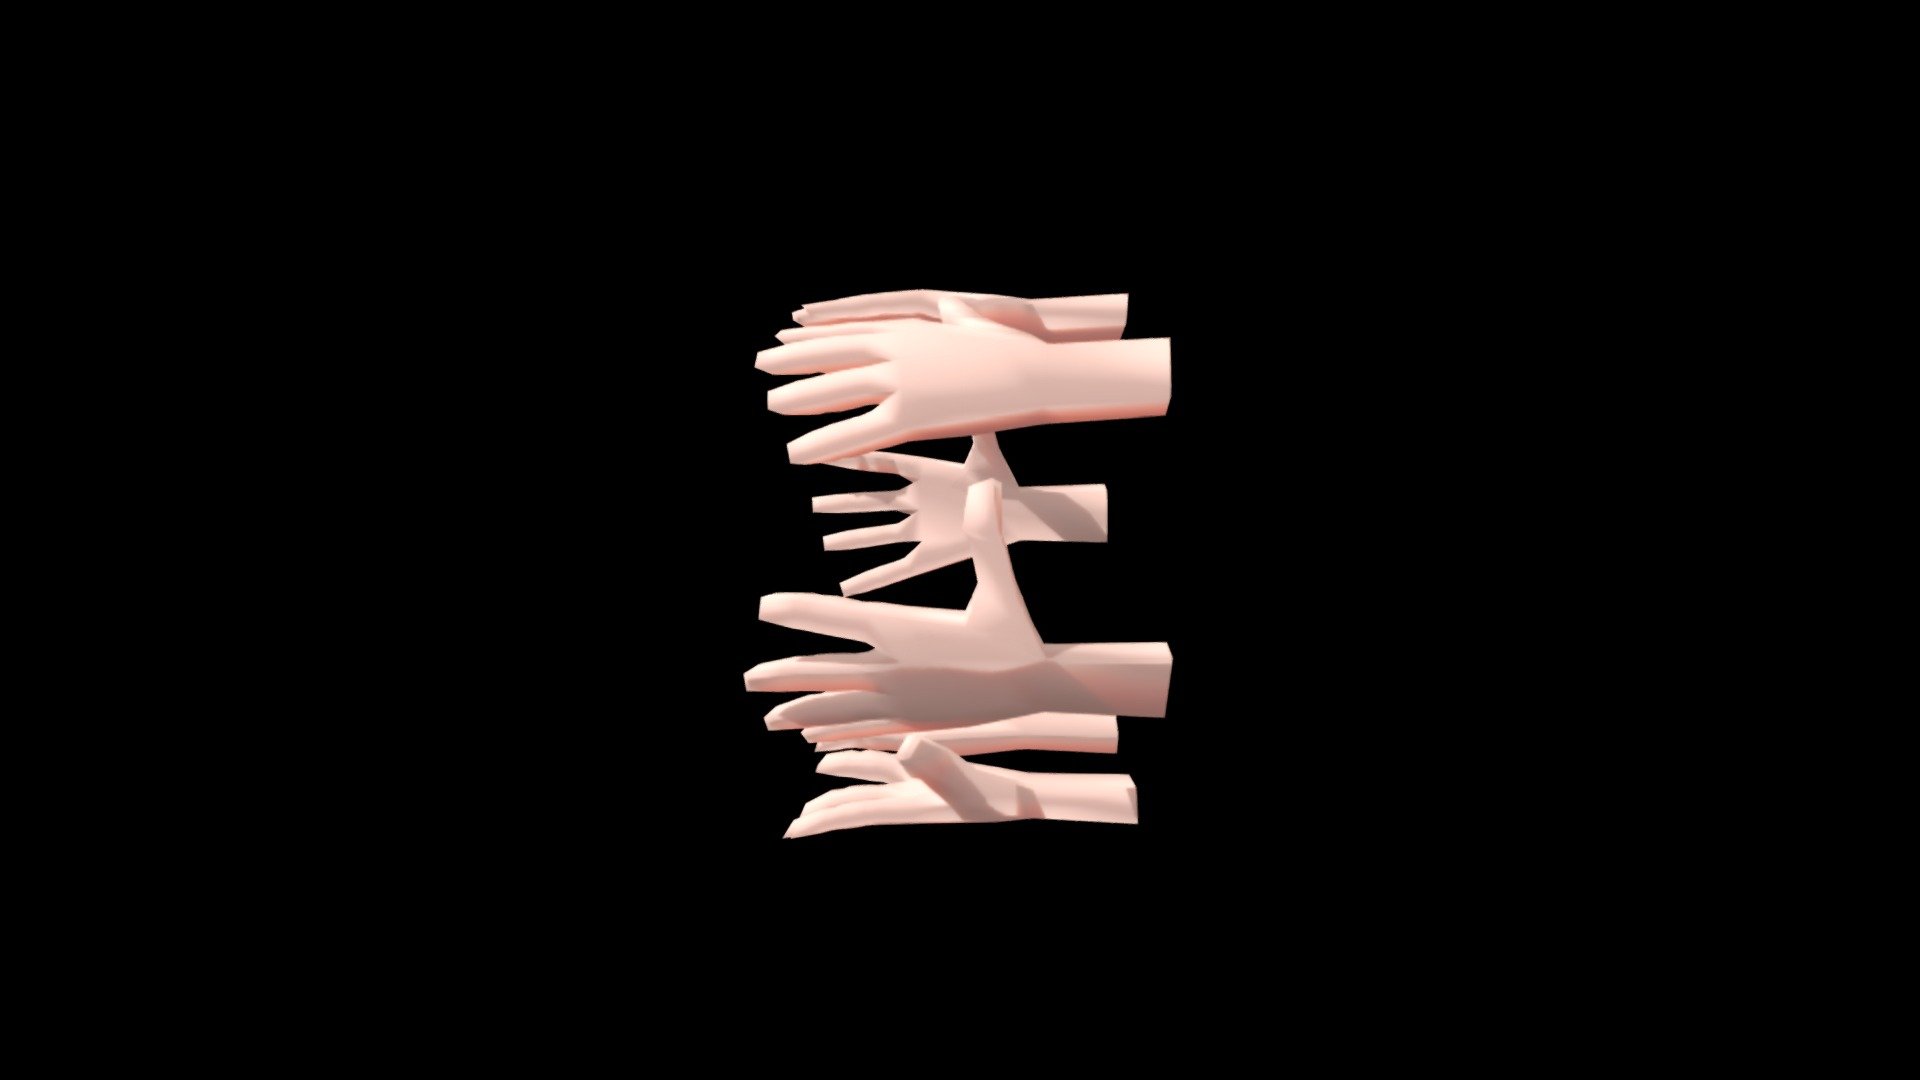 Modelo base (lowpoly) de mãos. 
Programa utilizado: Blender 3d - HTY - 3D model by _RTC_ 3d model